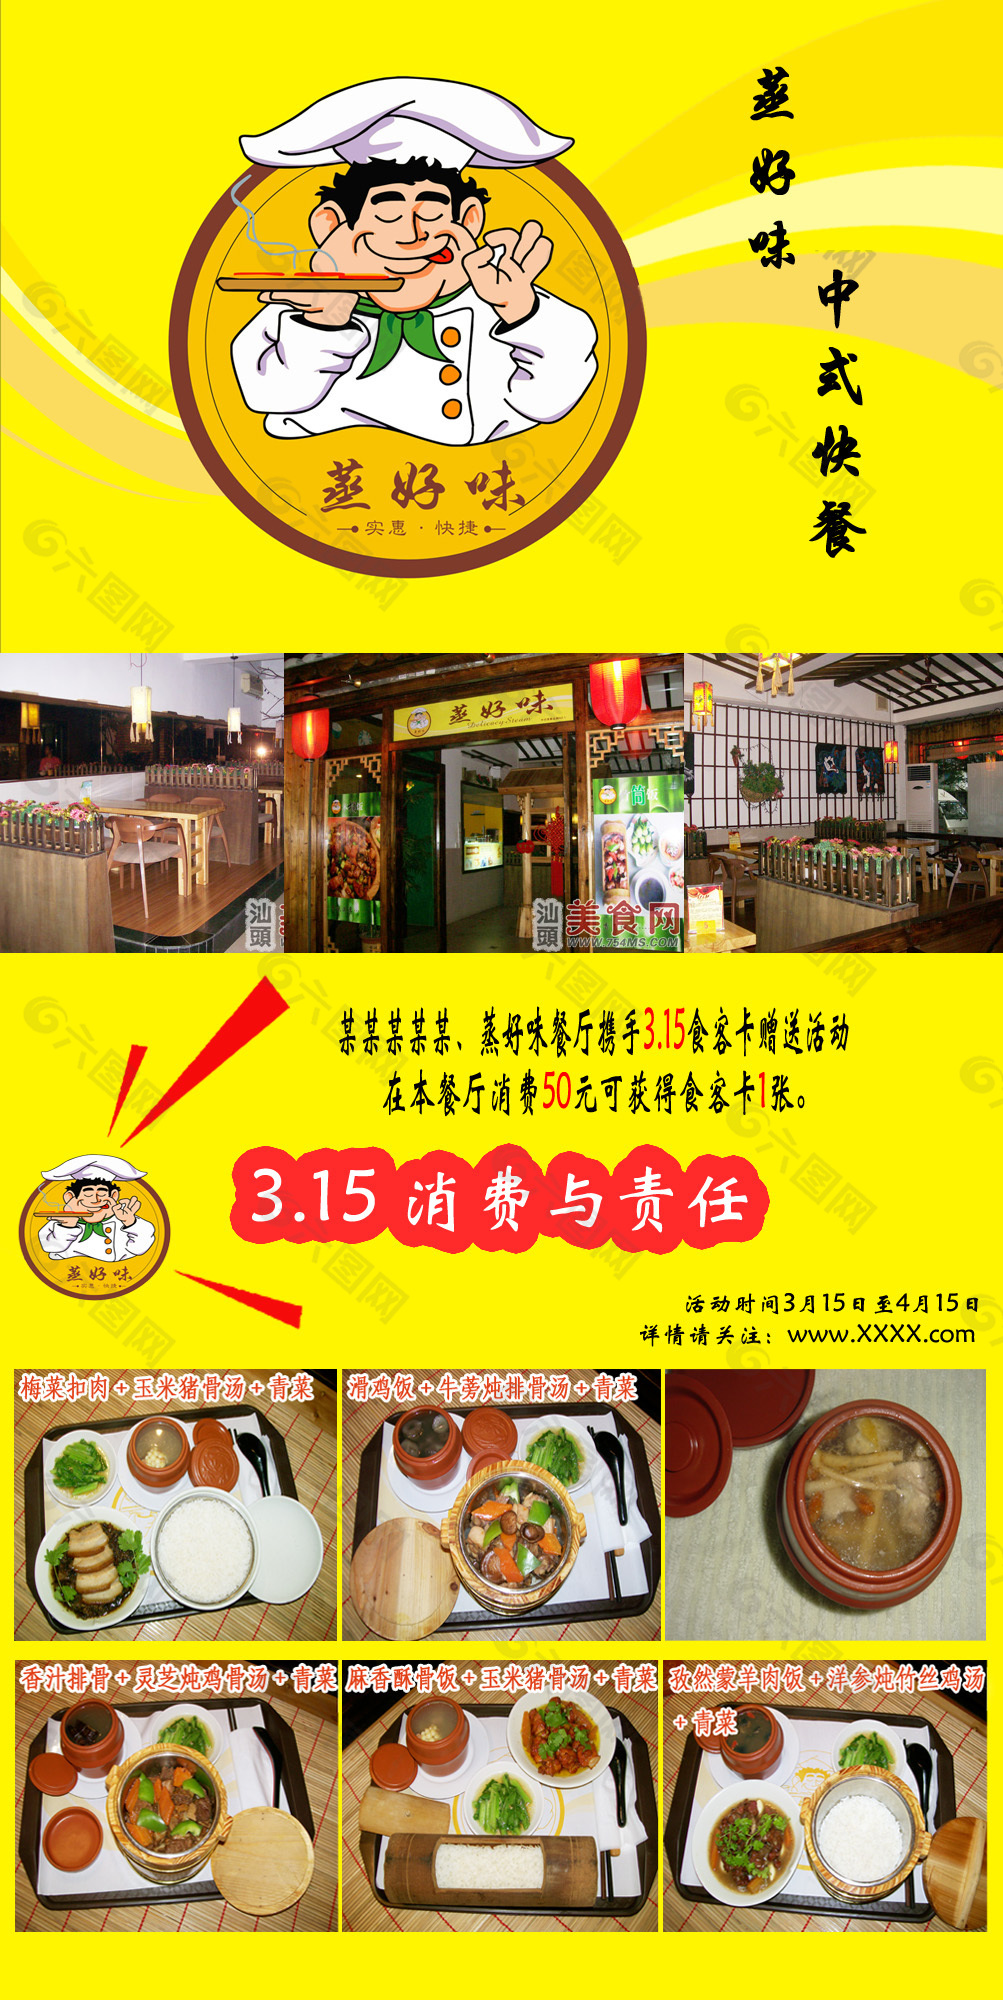 中式餐厅传单图片